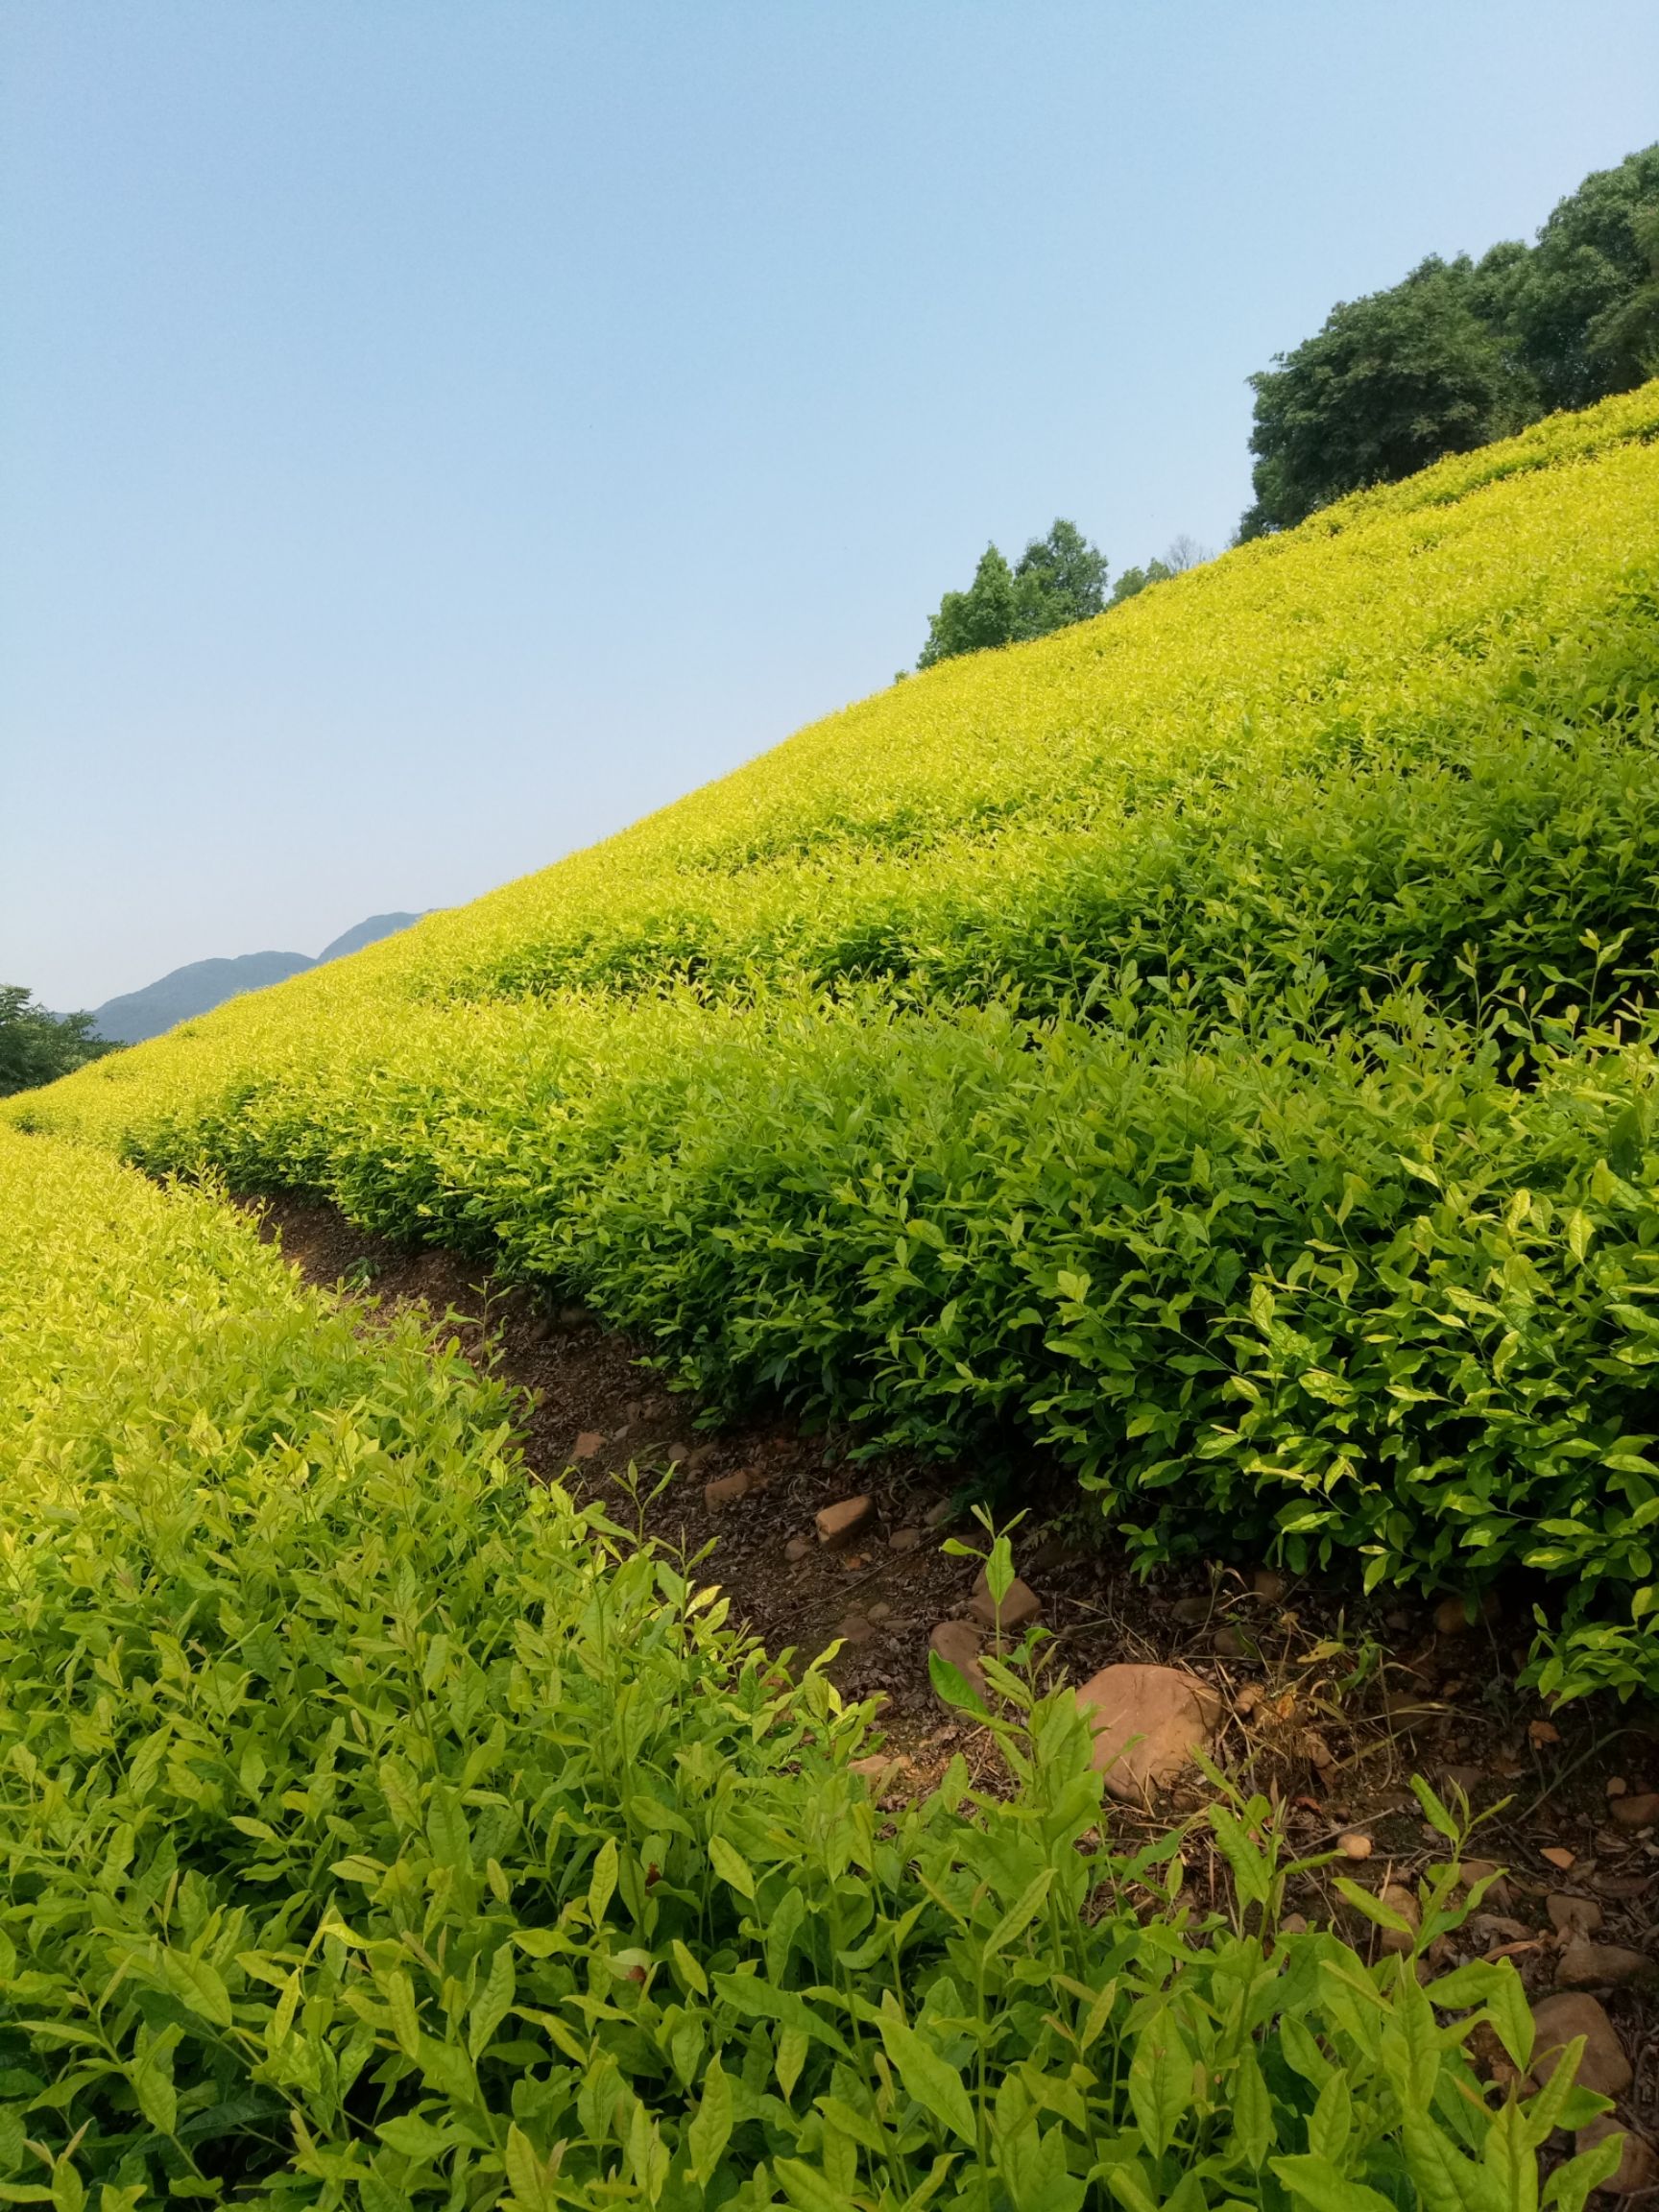 黄金茶 原产地茶农自产自销,人工纯有机肥,无农药化肥管理,质优价廉!